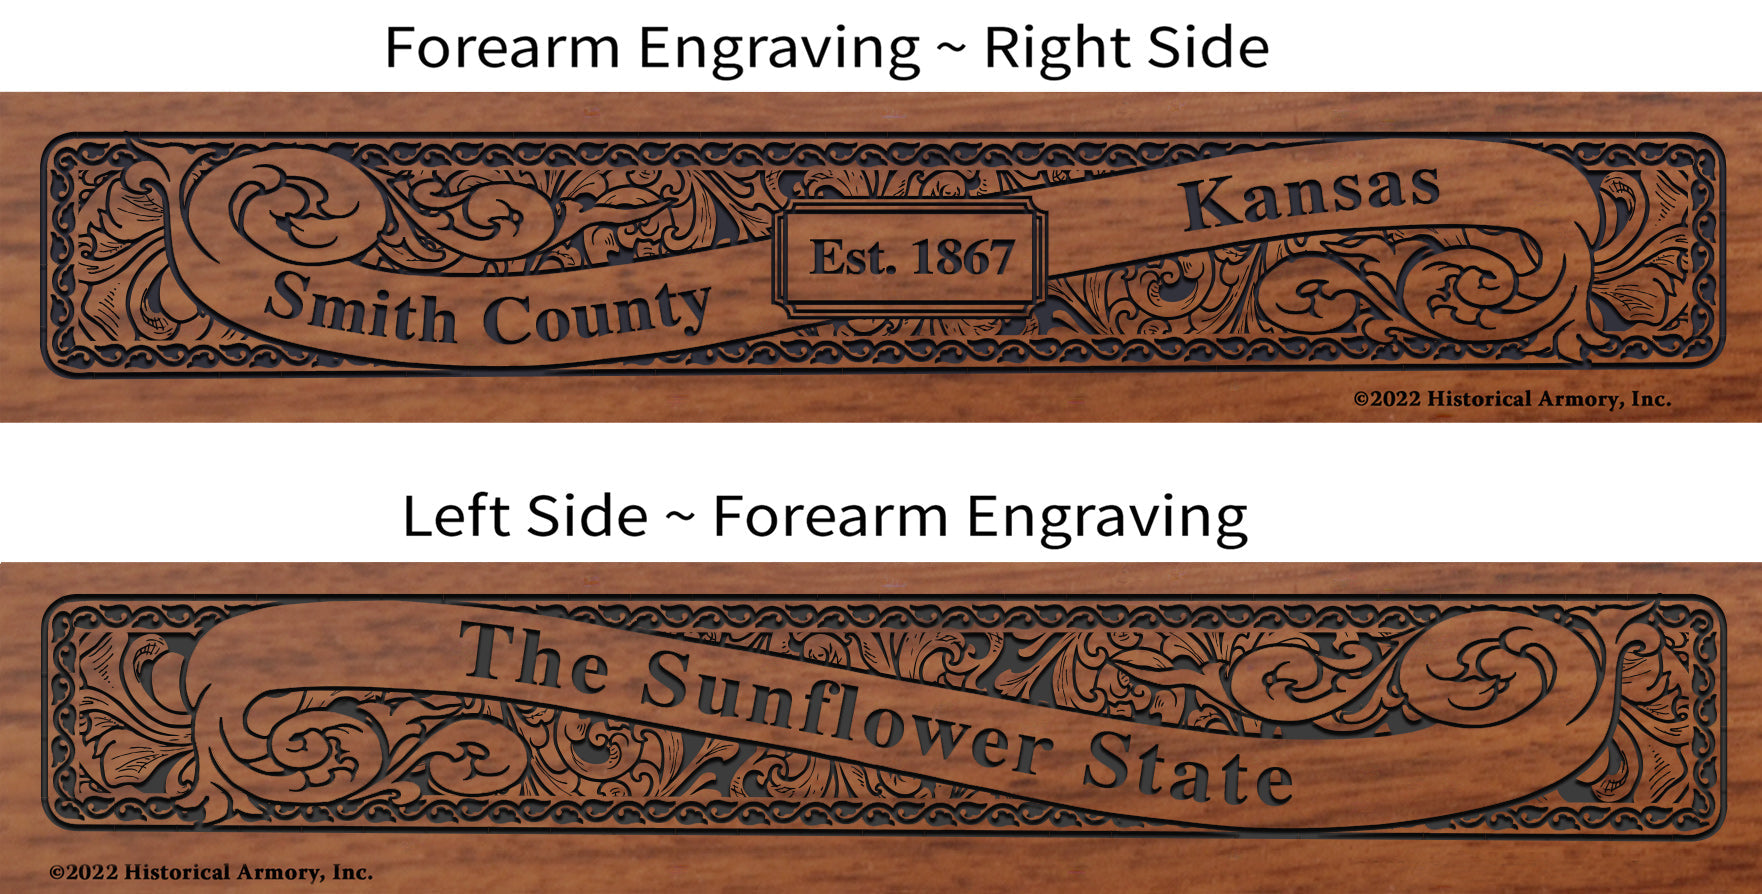 Smith County Kansas Engraved Rifle Forearm